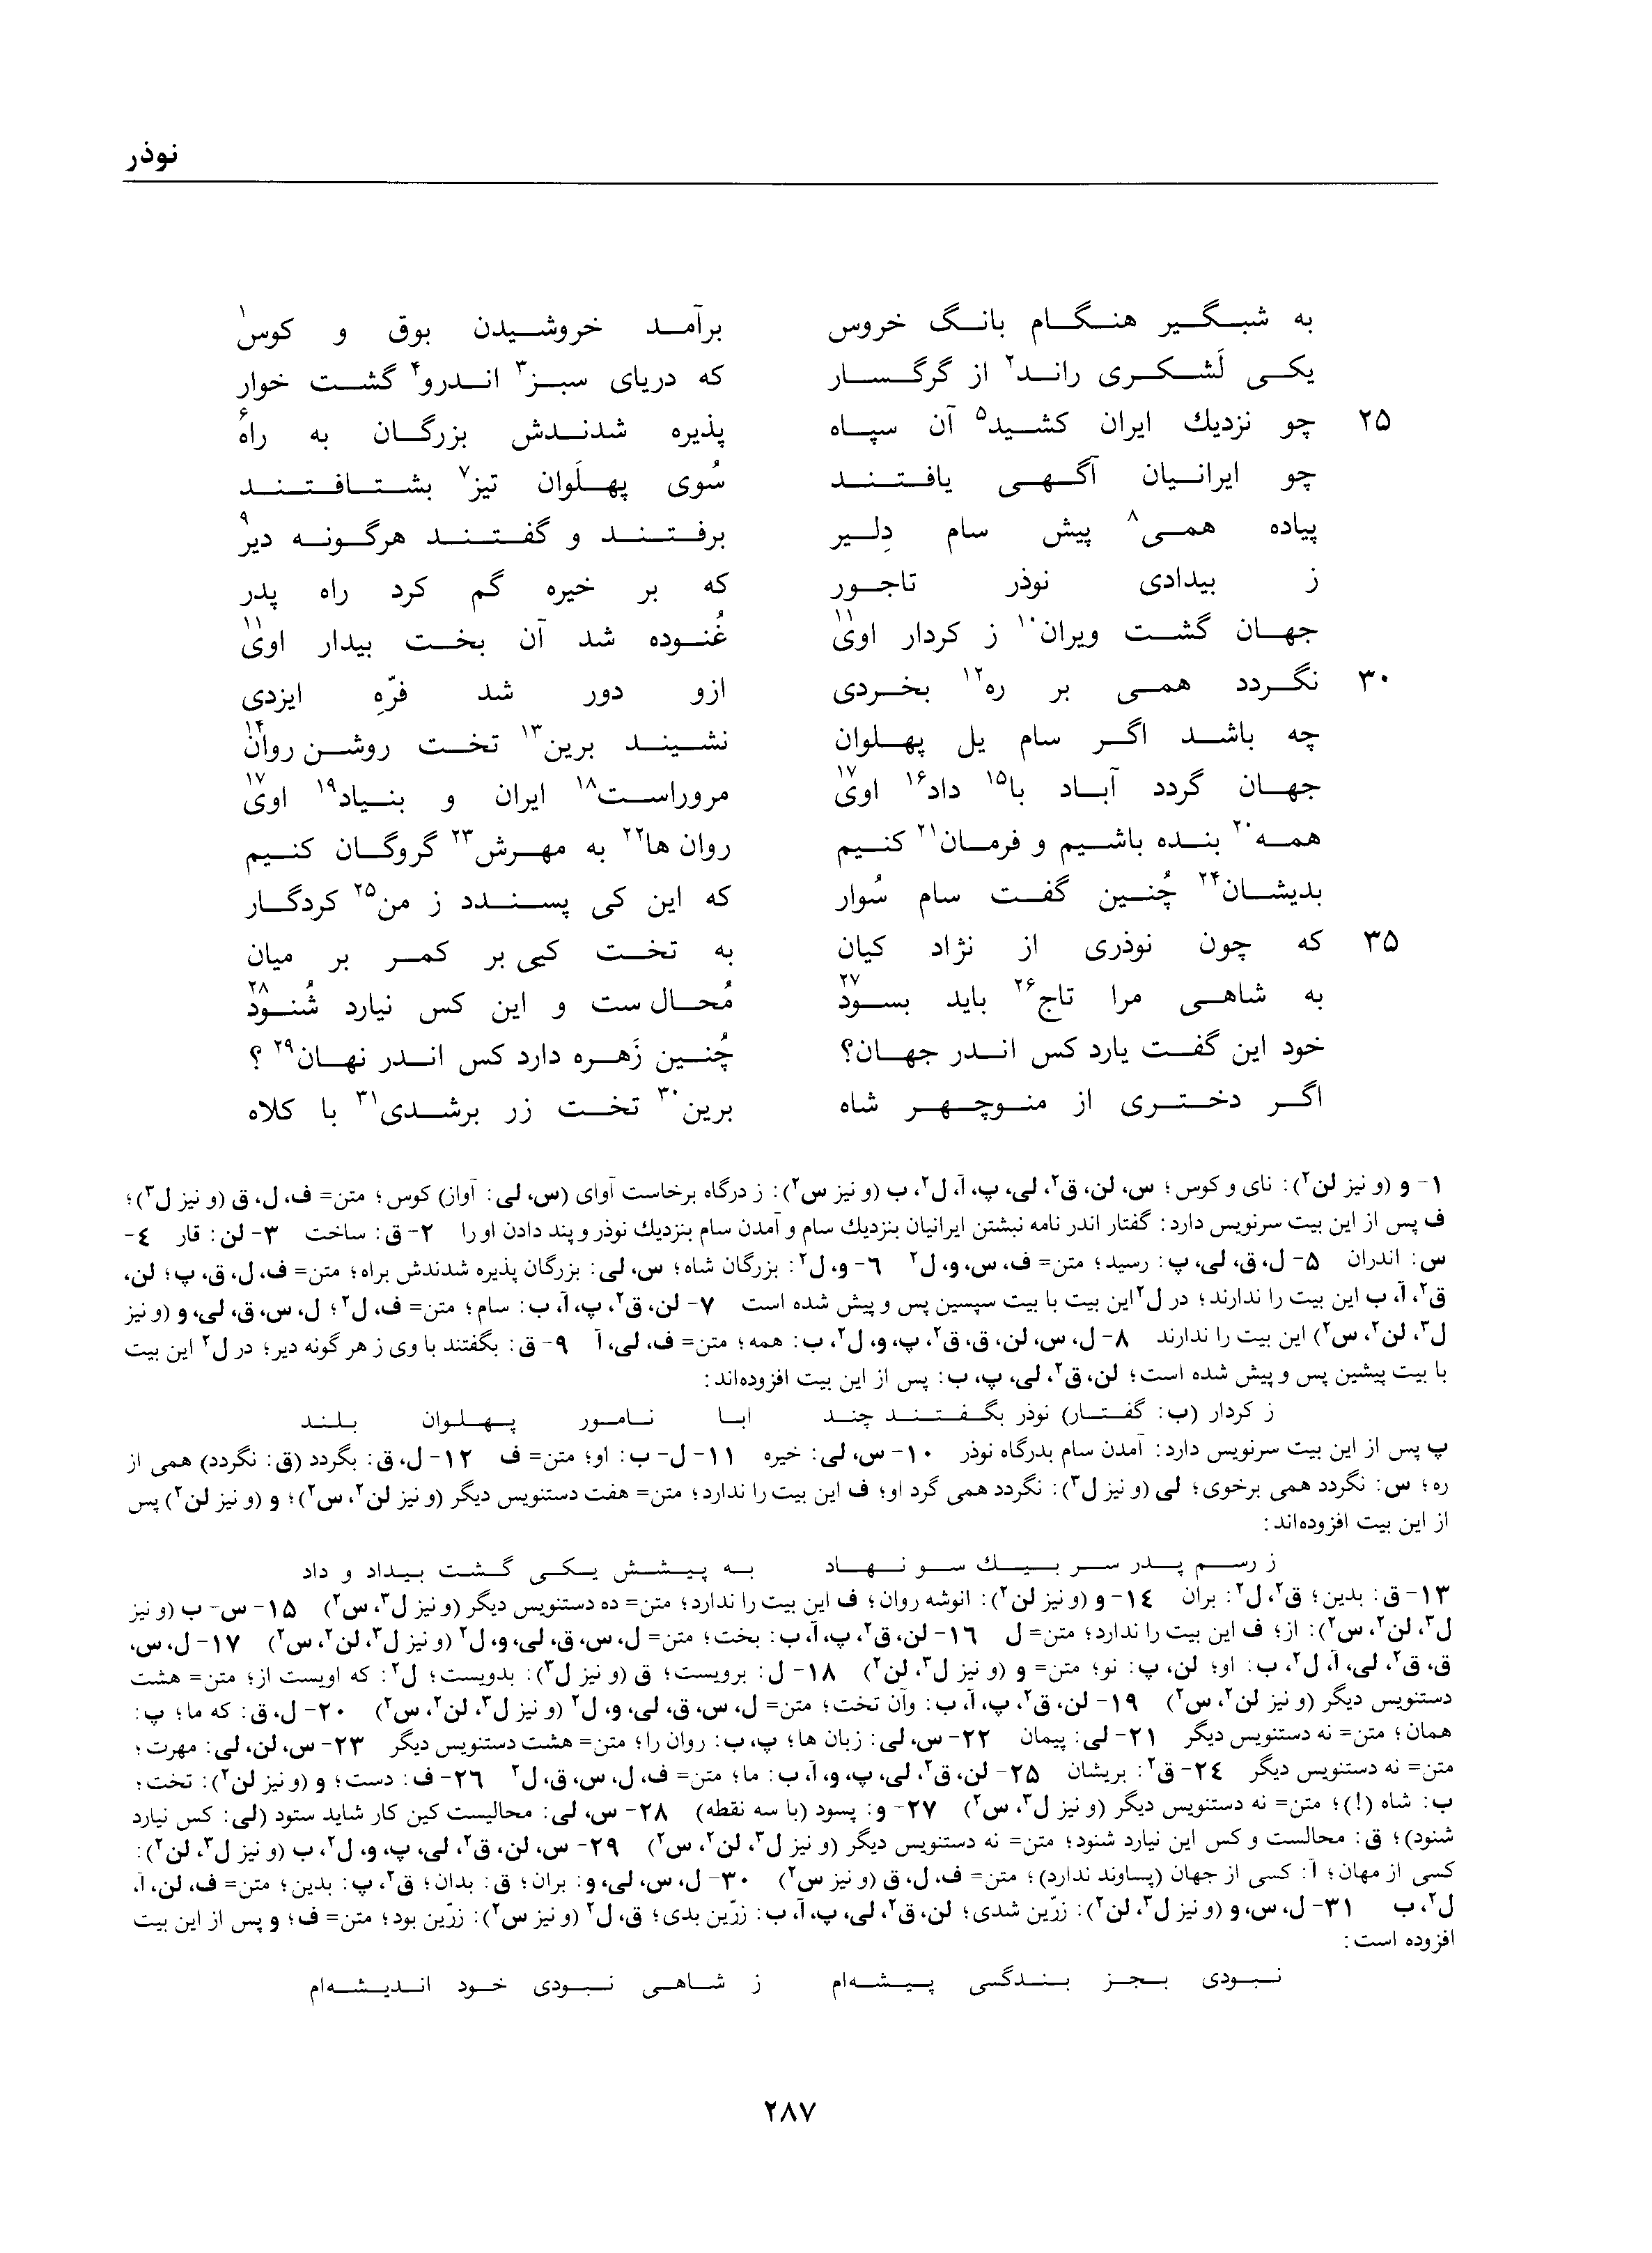 vol. 1, p. 287